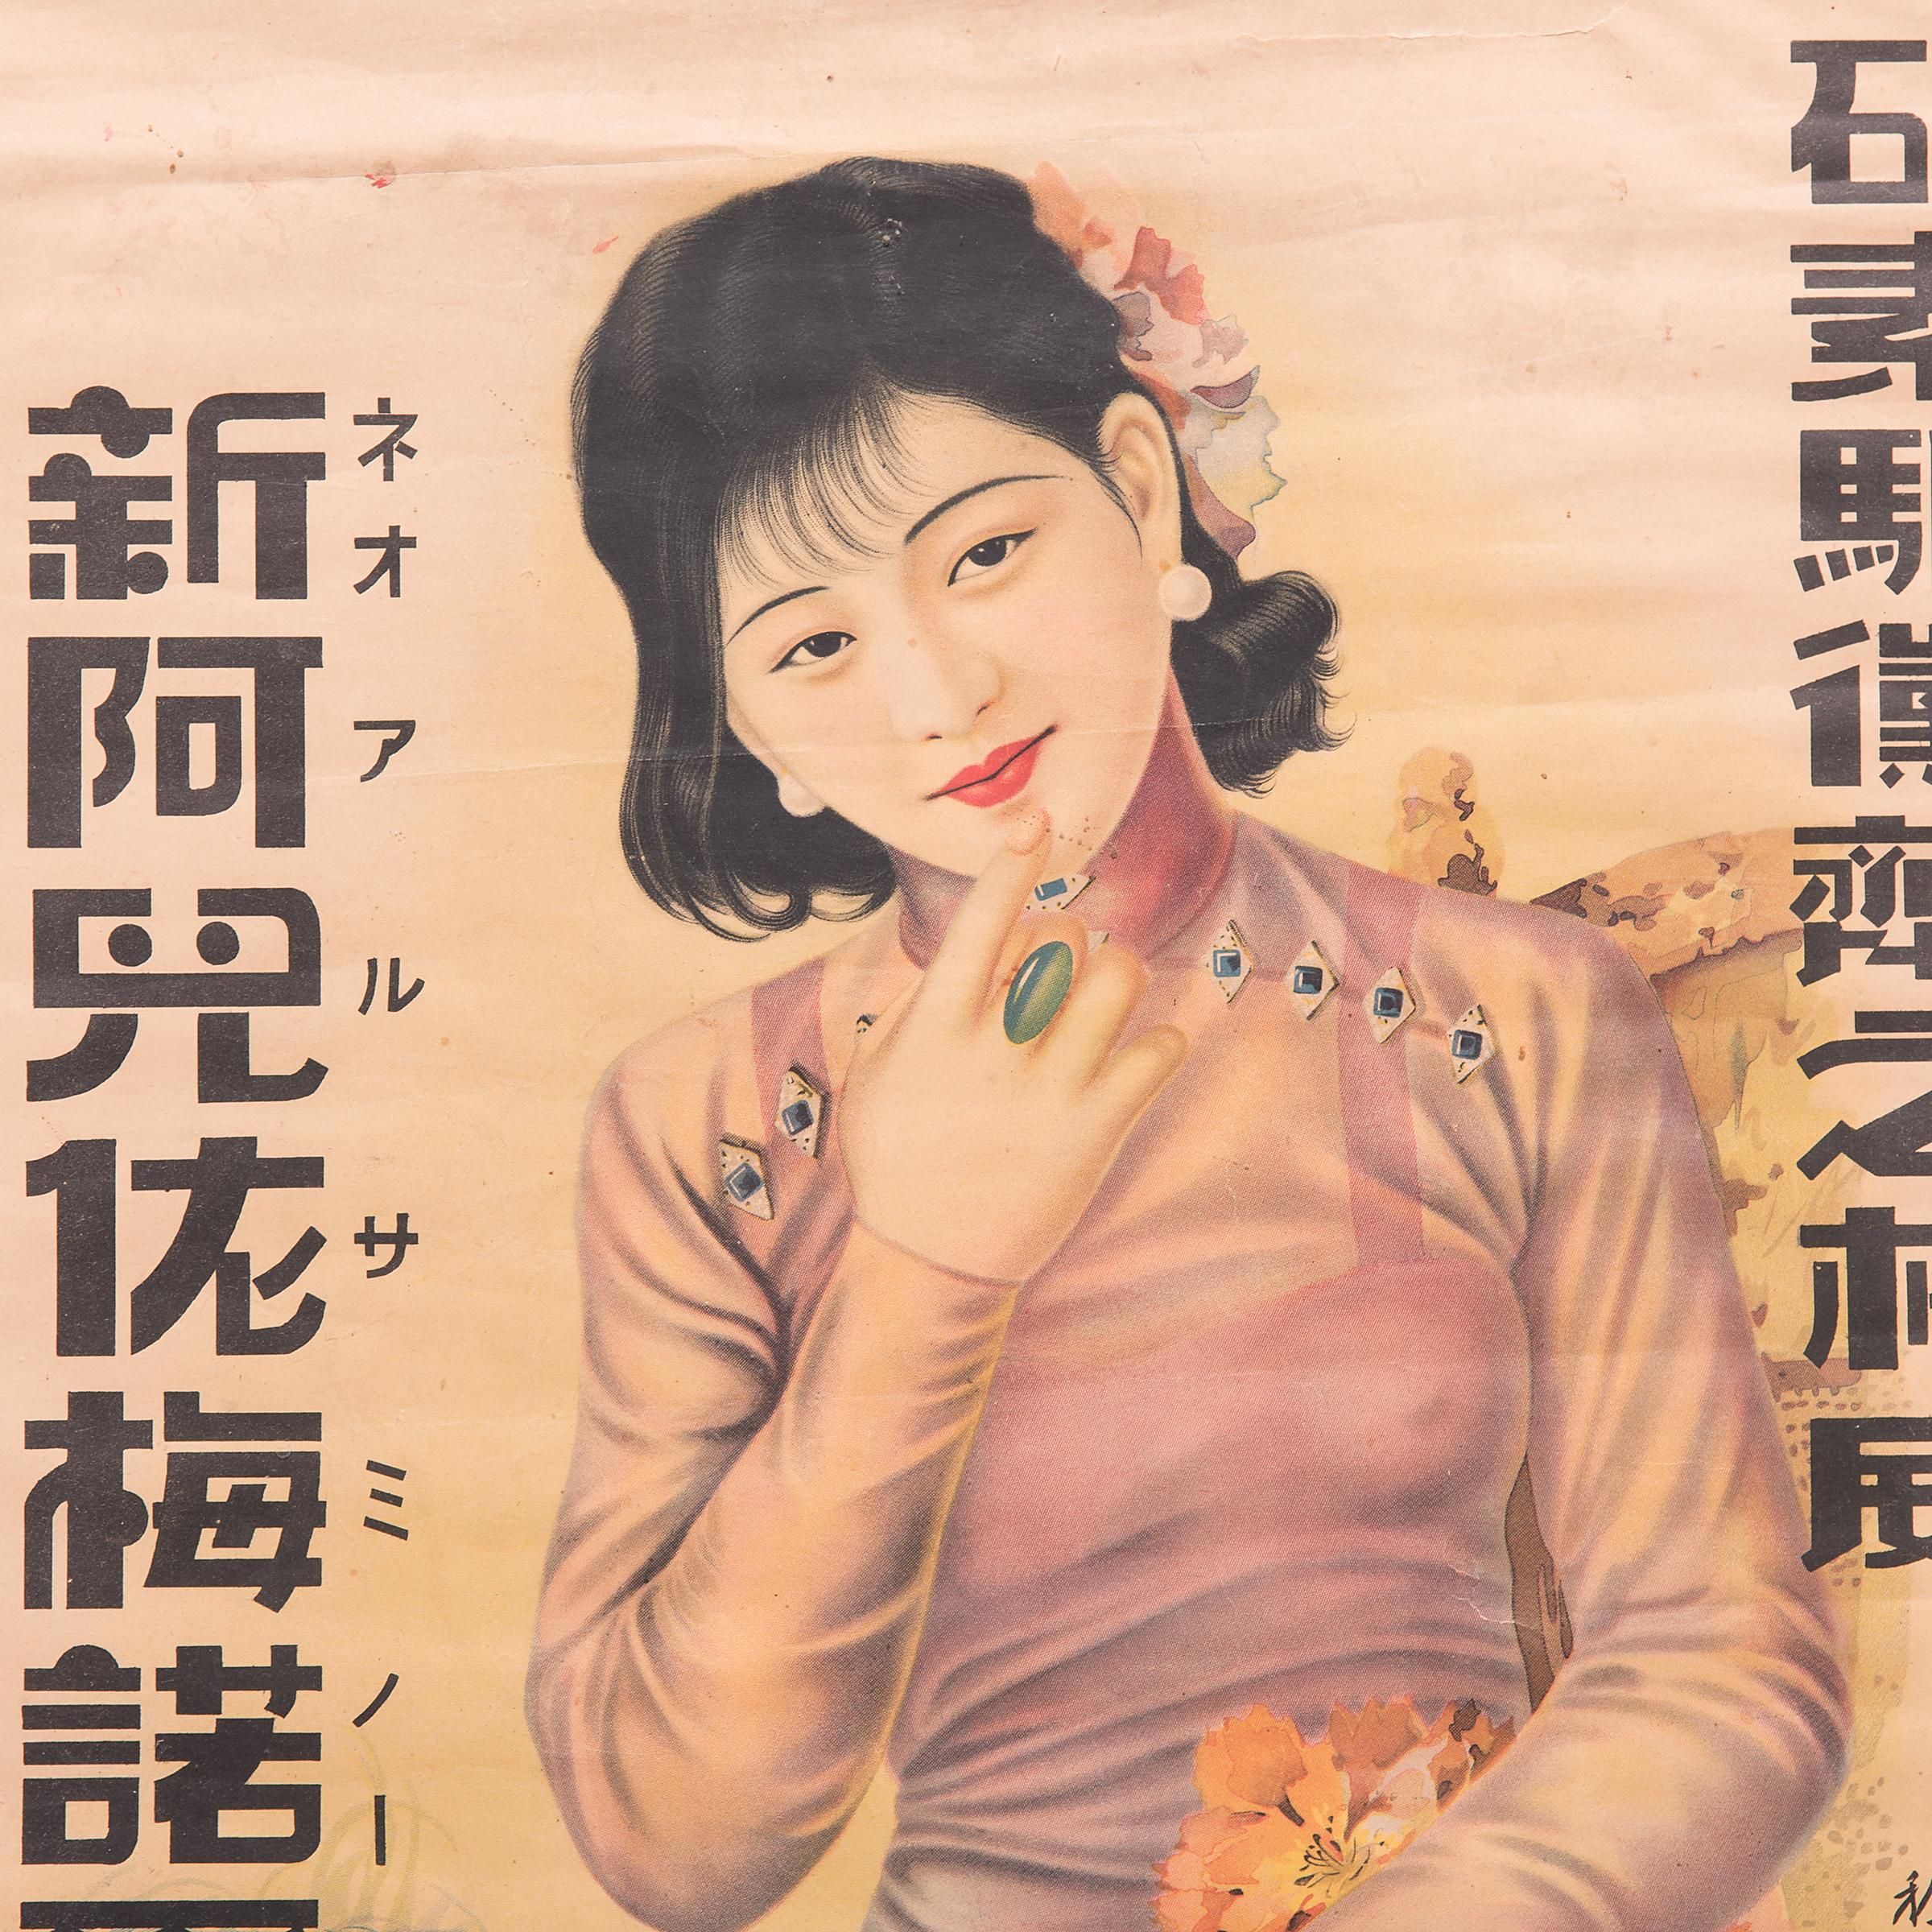 Cette affiche publicitaire des années 1930 pour une société japonaise opérant en Chine allie les détails méticuleux de la peinture chinoise traditionnelle à l'art de la lithographie en couleur, popularisé lors du boom économique du début du XXe